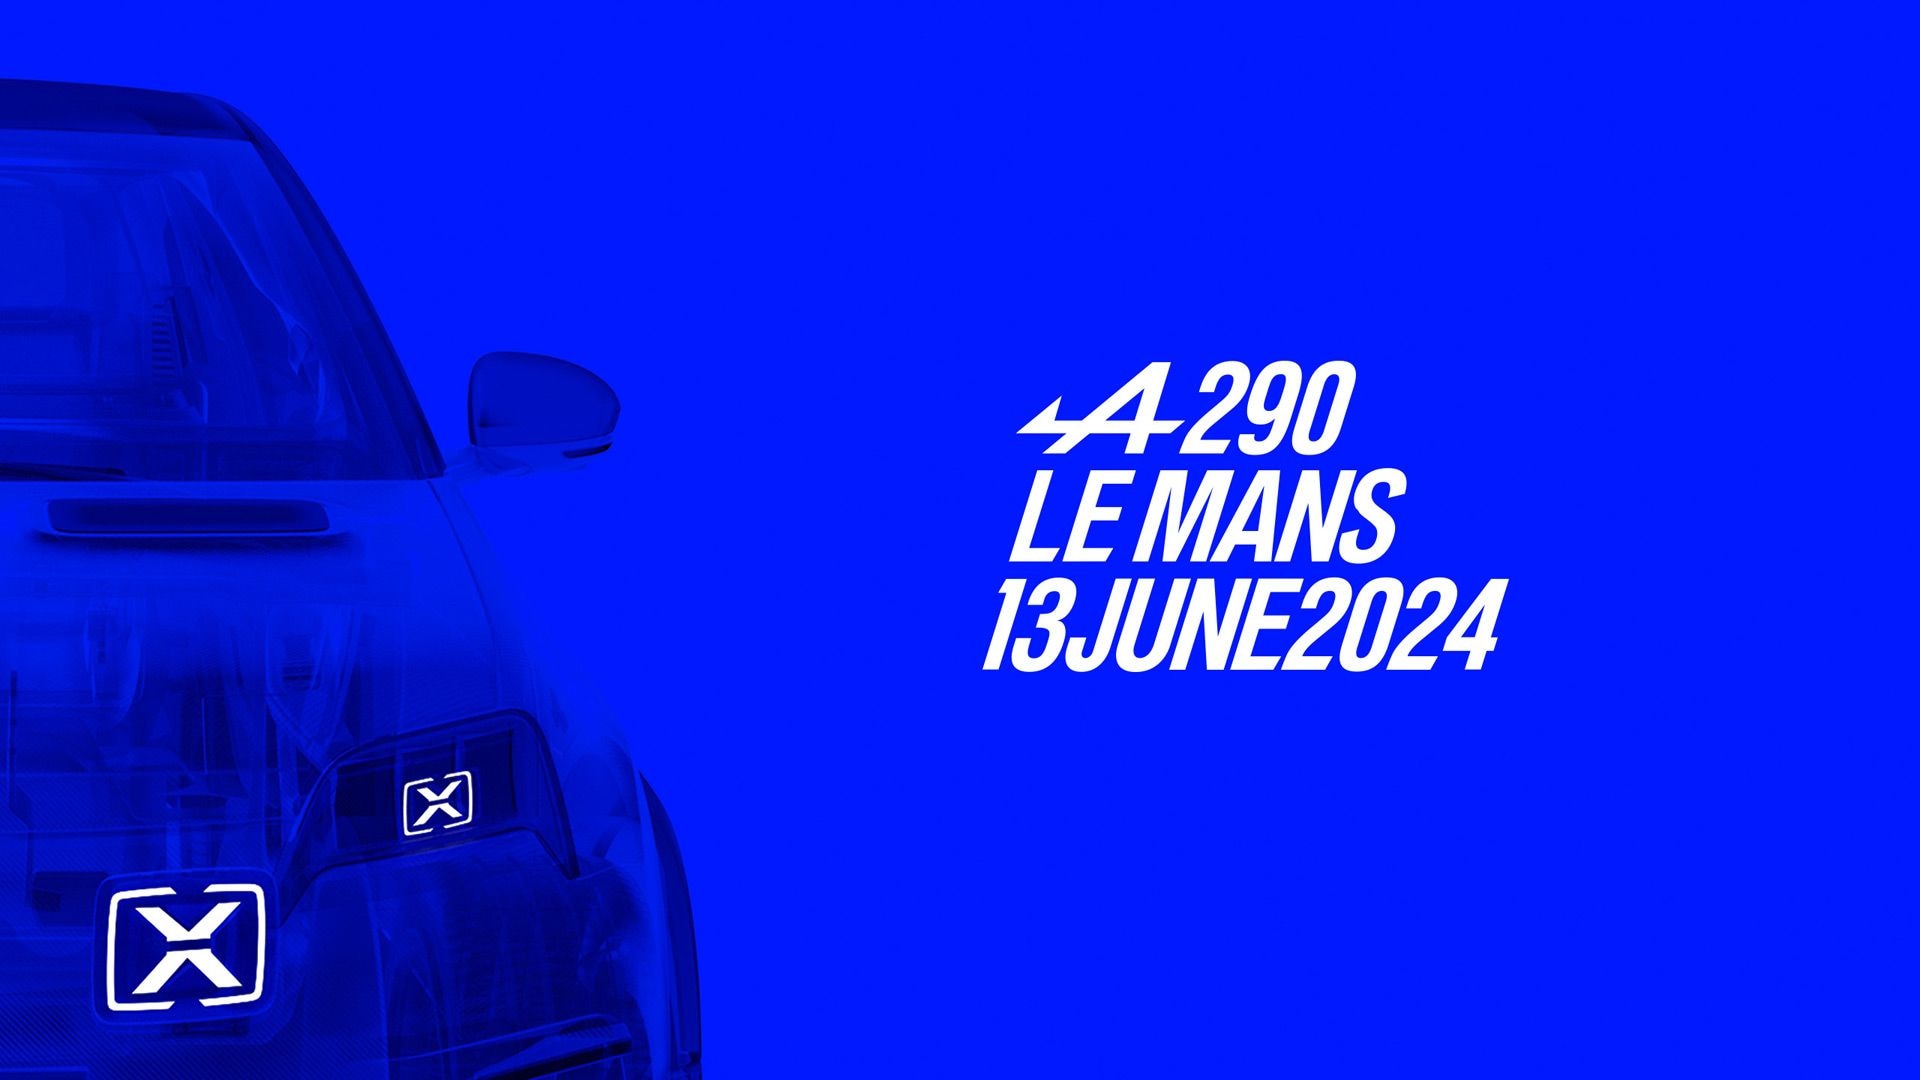 Teaser for 2025 Alpine A290 debuting on June 13, 2024